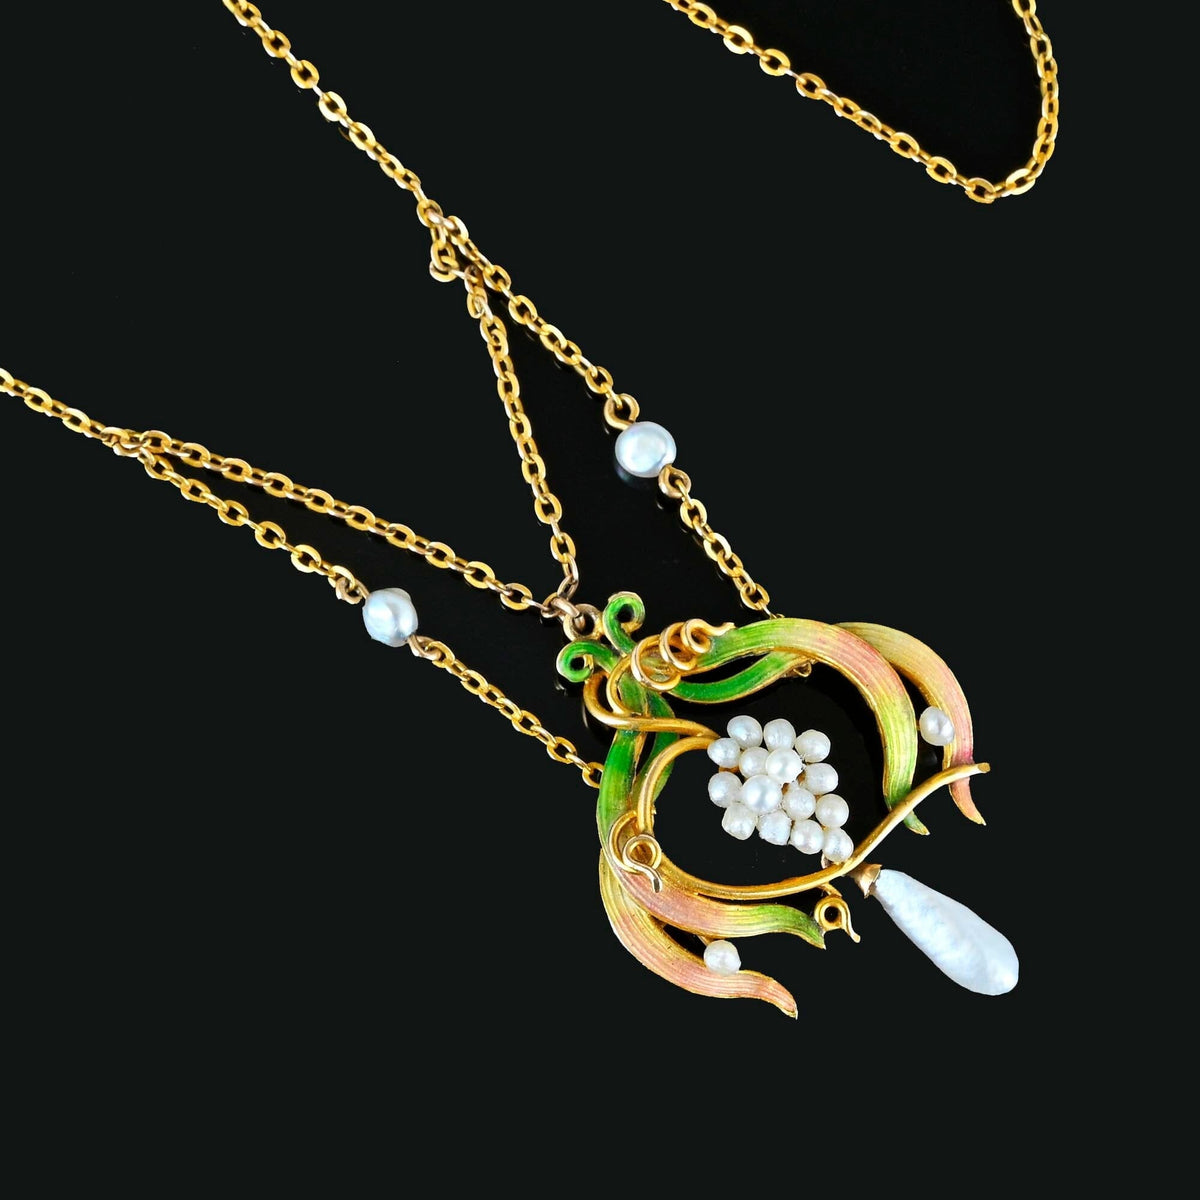 Vintage Art Nouveau Style Pure Locket Necklace – Boylerpf